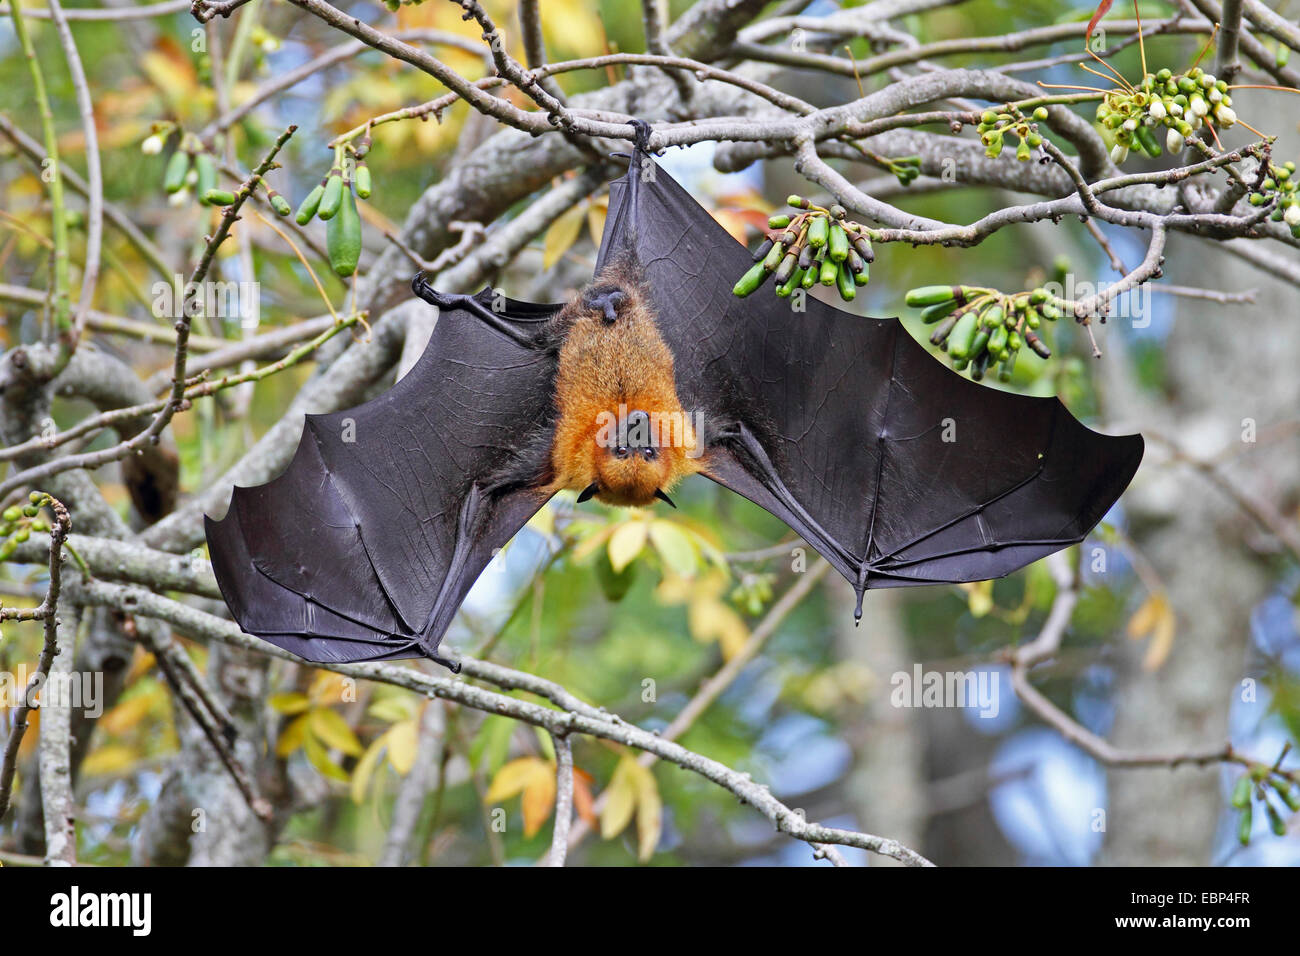 Seychelles, seychelles flying fox (Pteropus seychellensis fruit bat), suspendu avec les ailes ouvertes, la tête dans un arbre, Seychelles, Mahe Banque D'Images